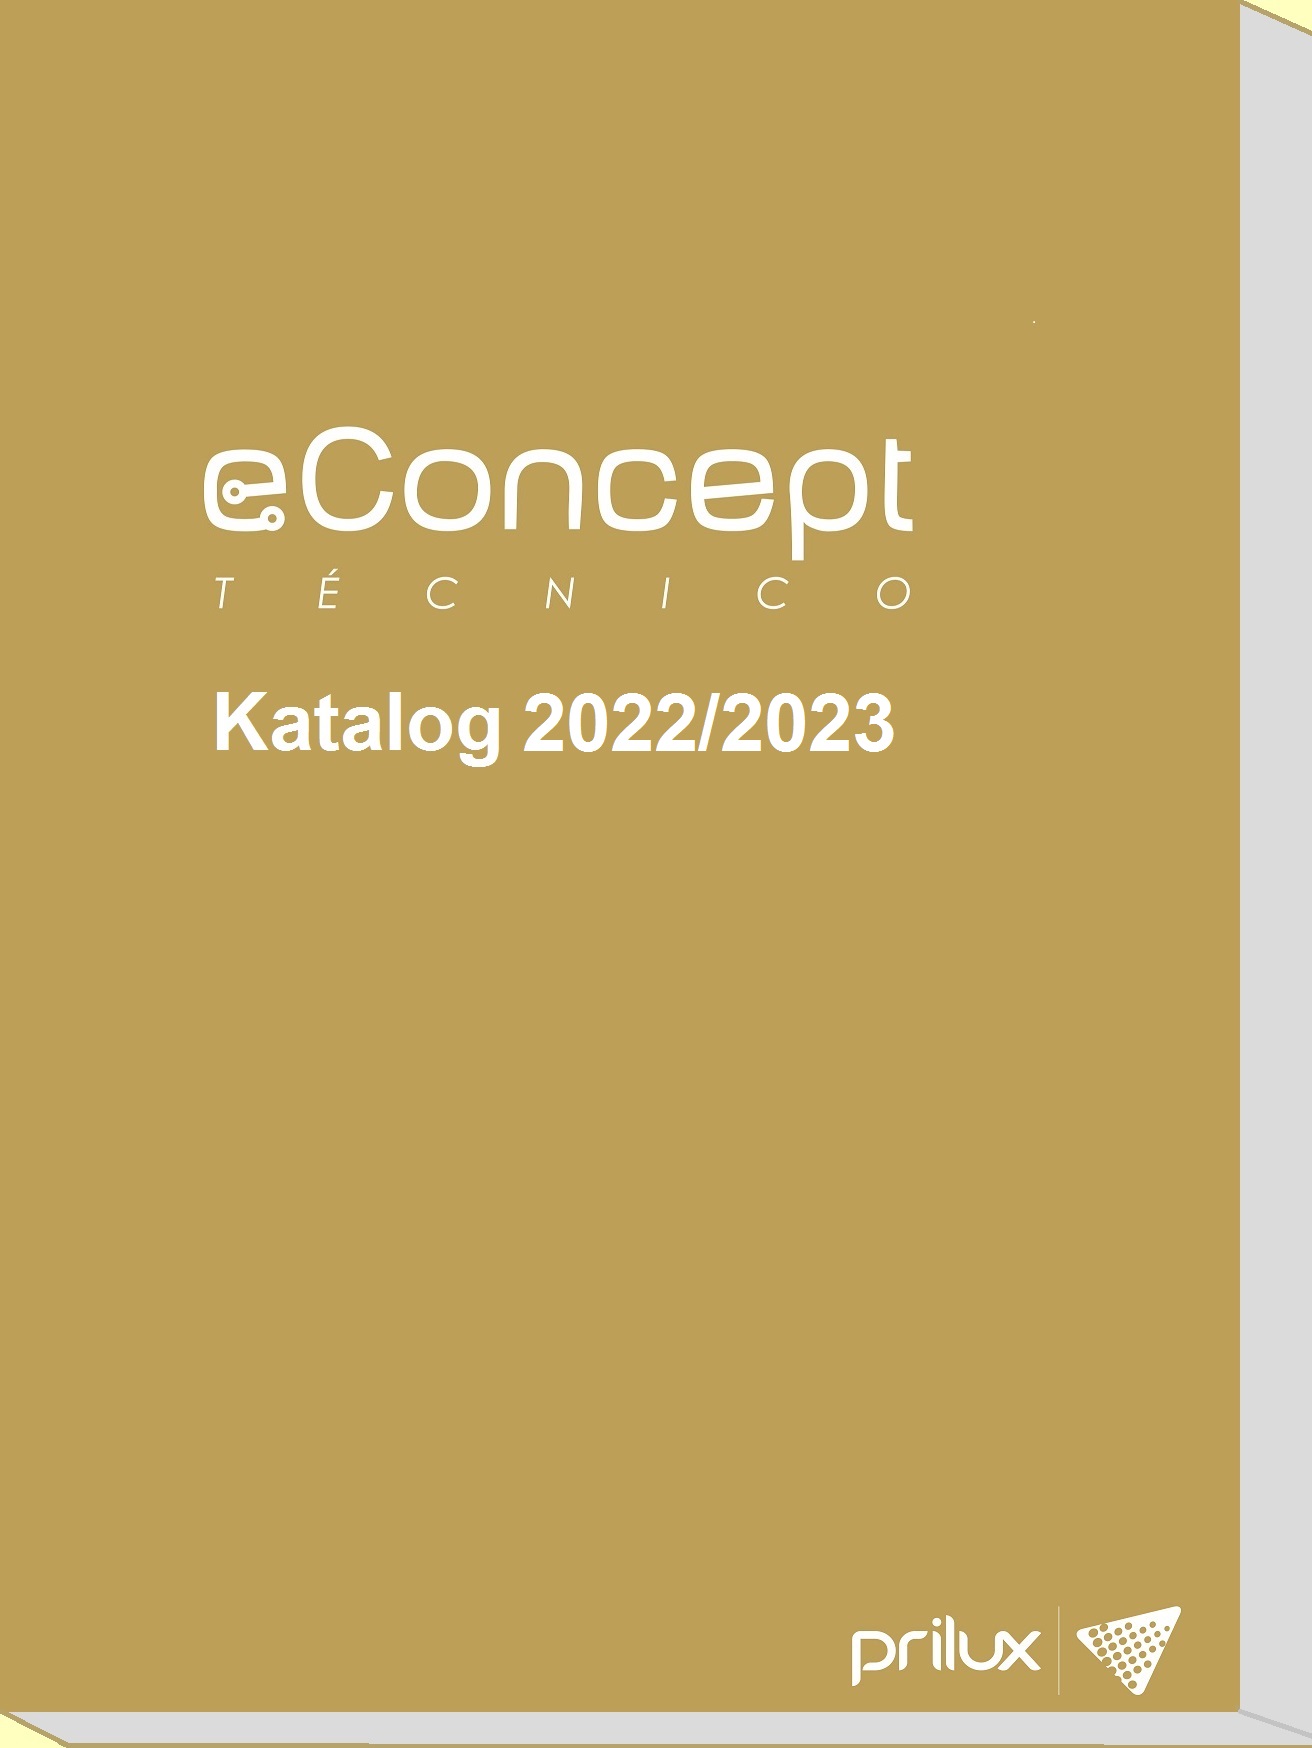 econcept technico2020